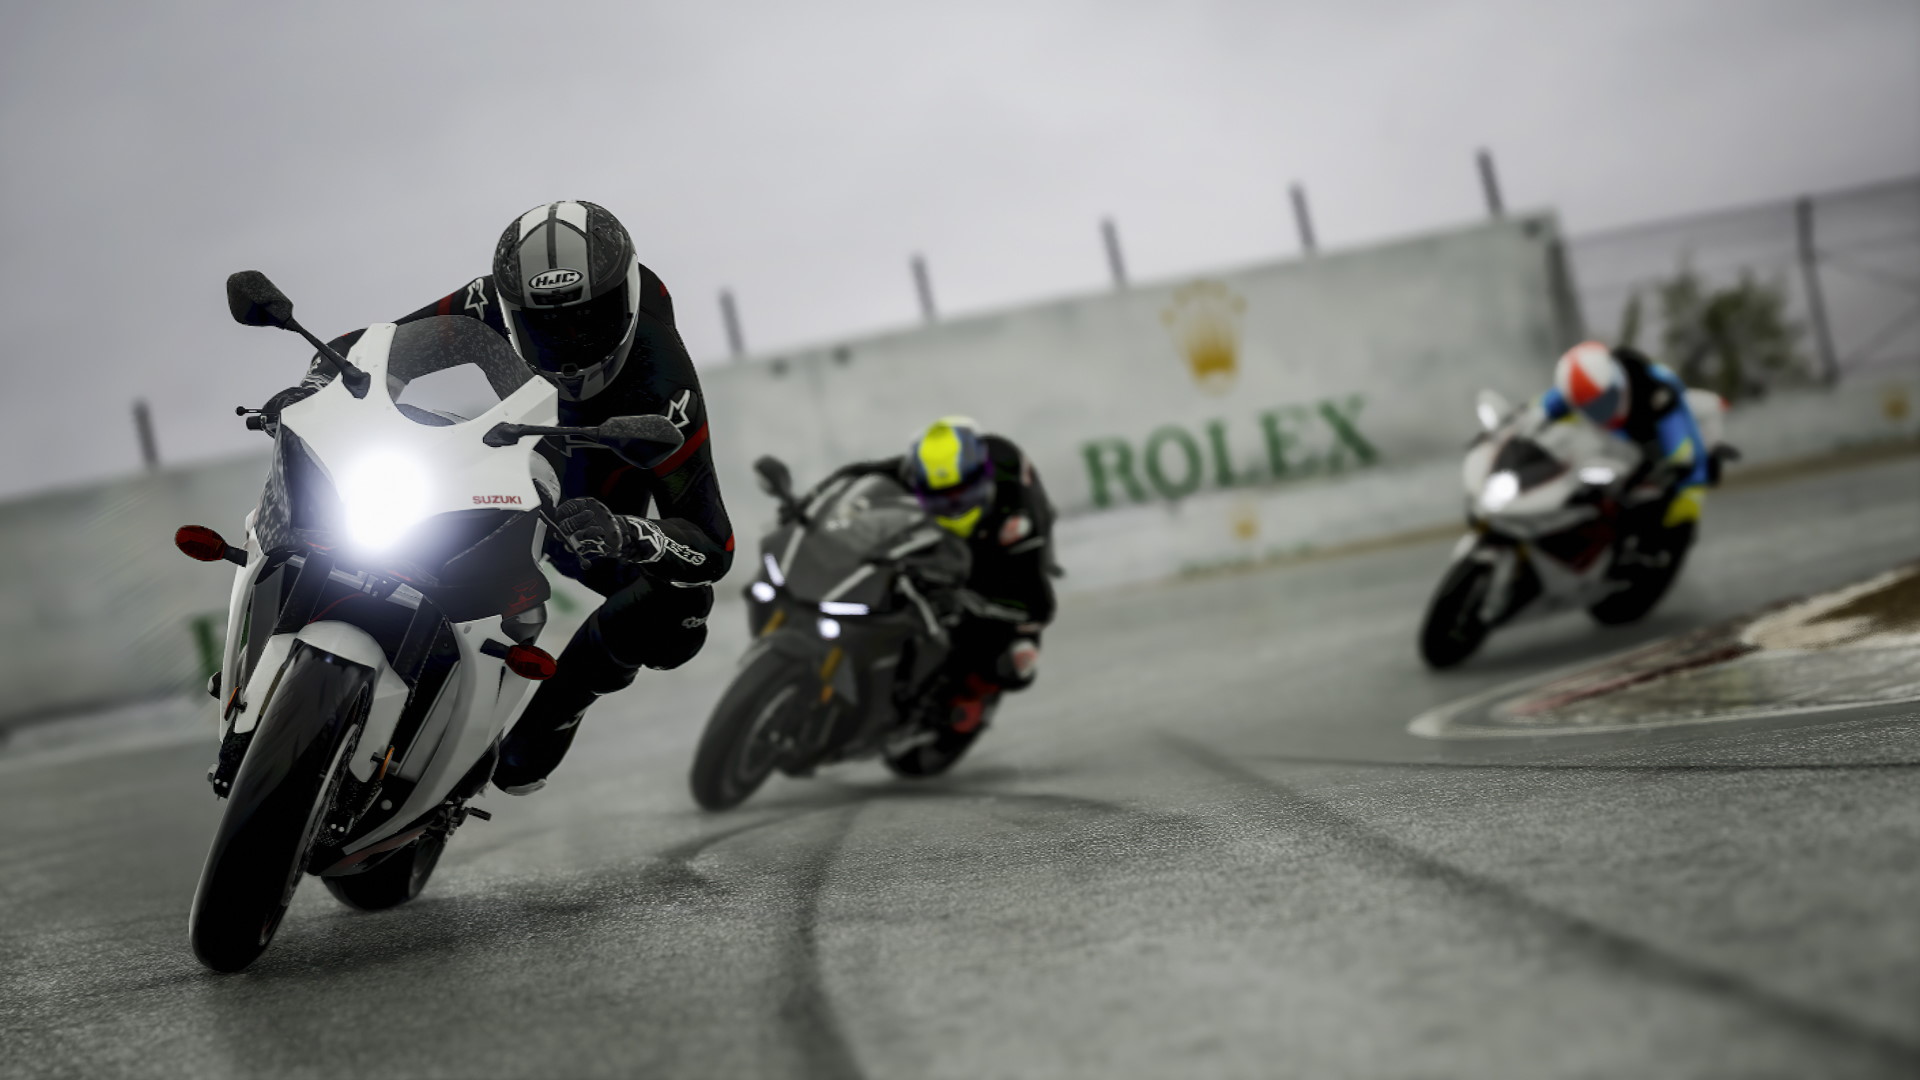 《极速骑行4》照片级画质视频发布后游戏销量大涨